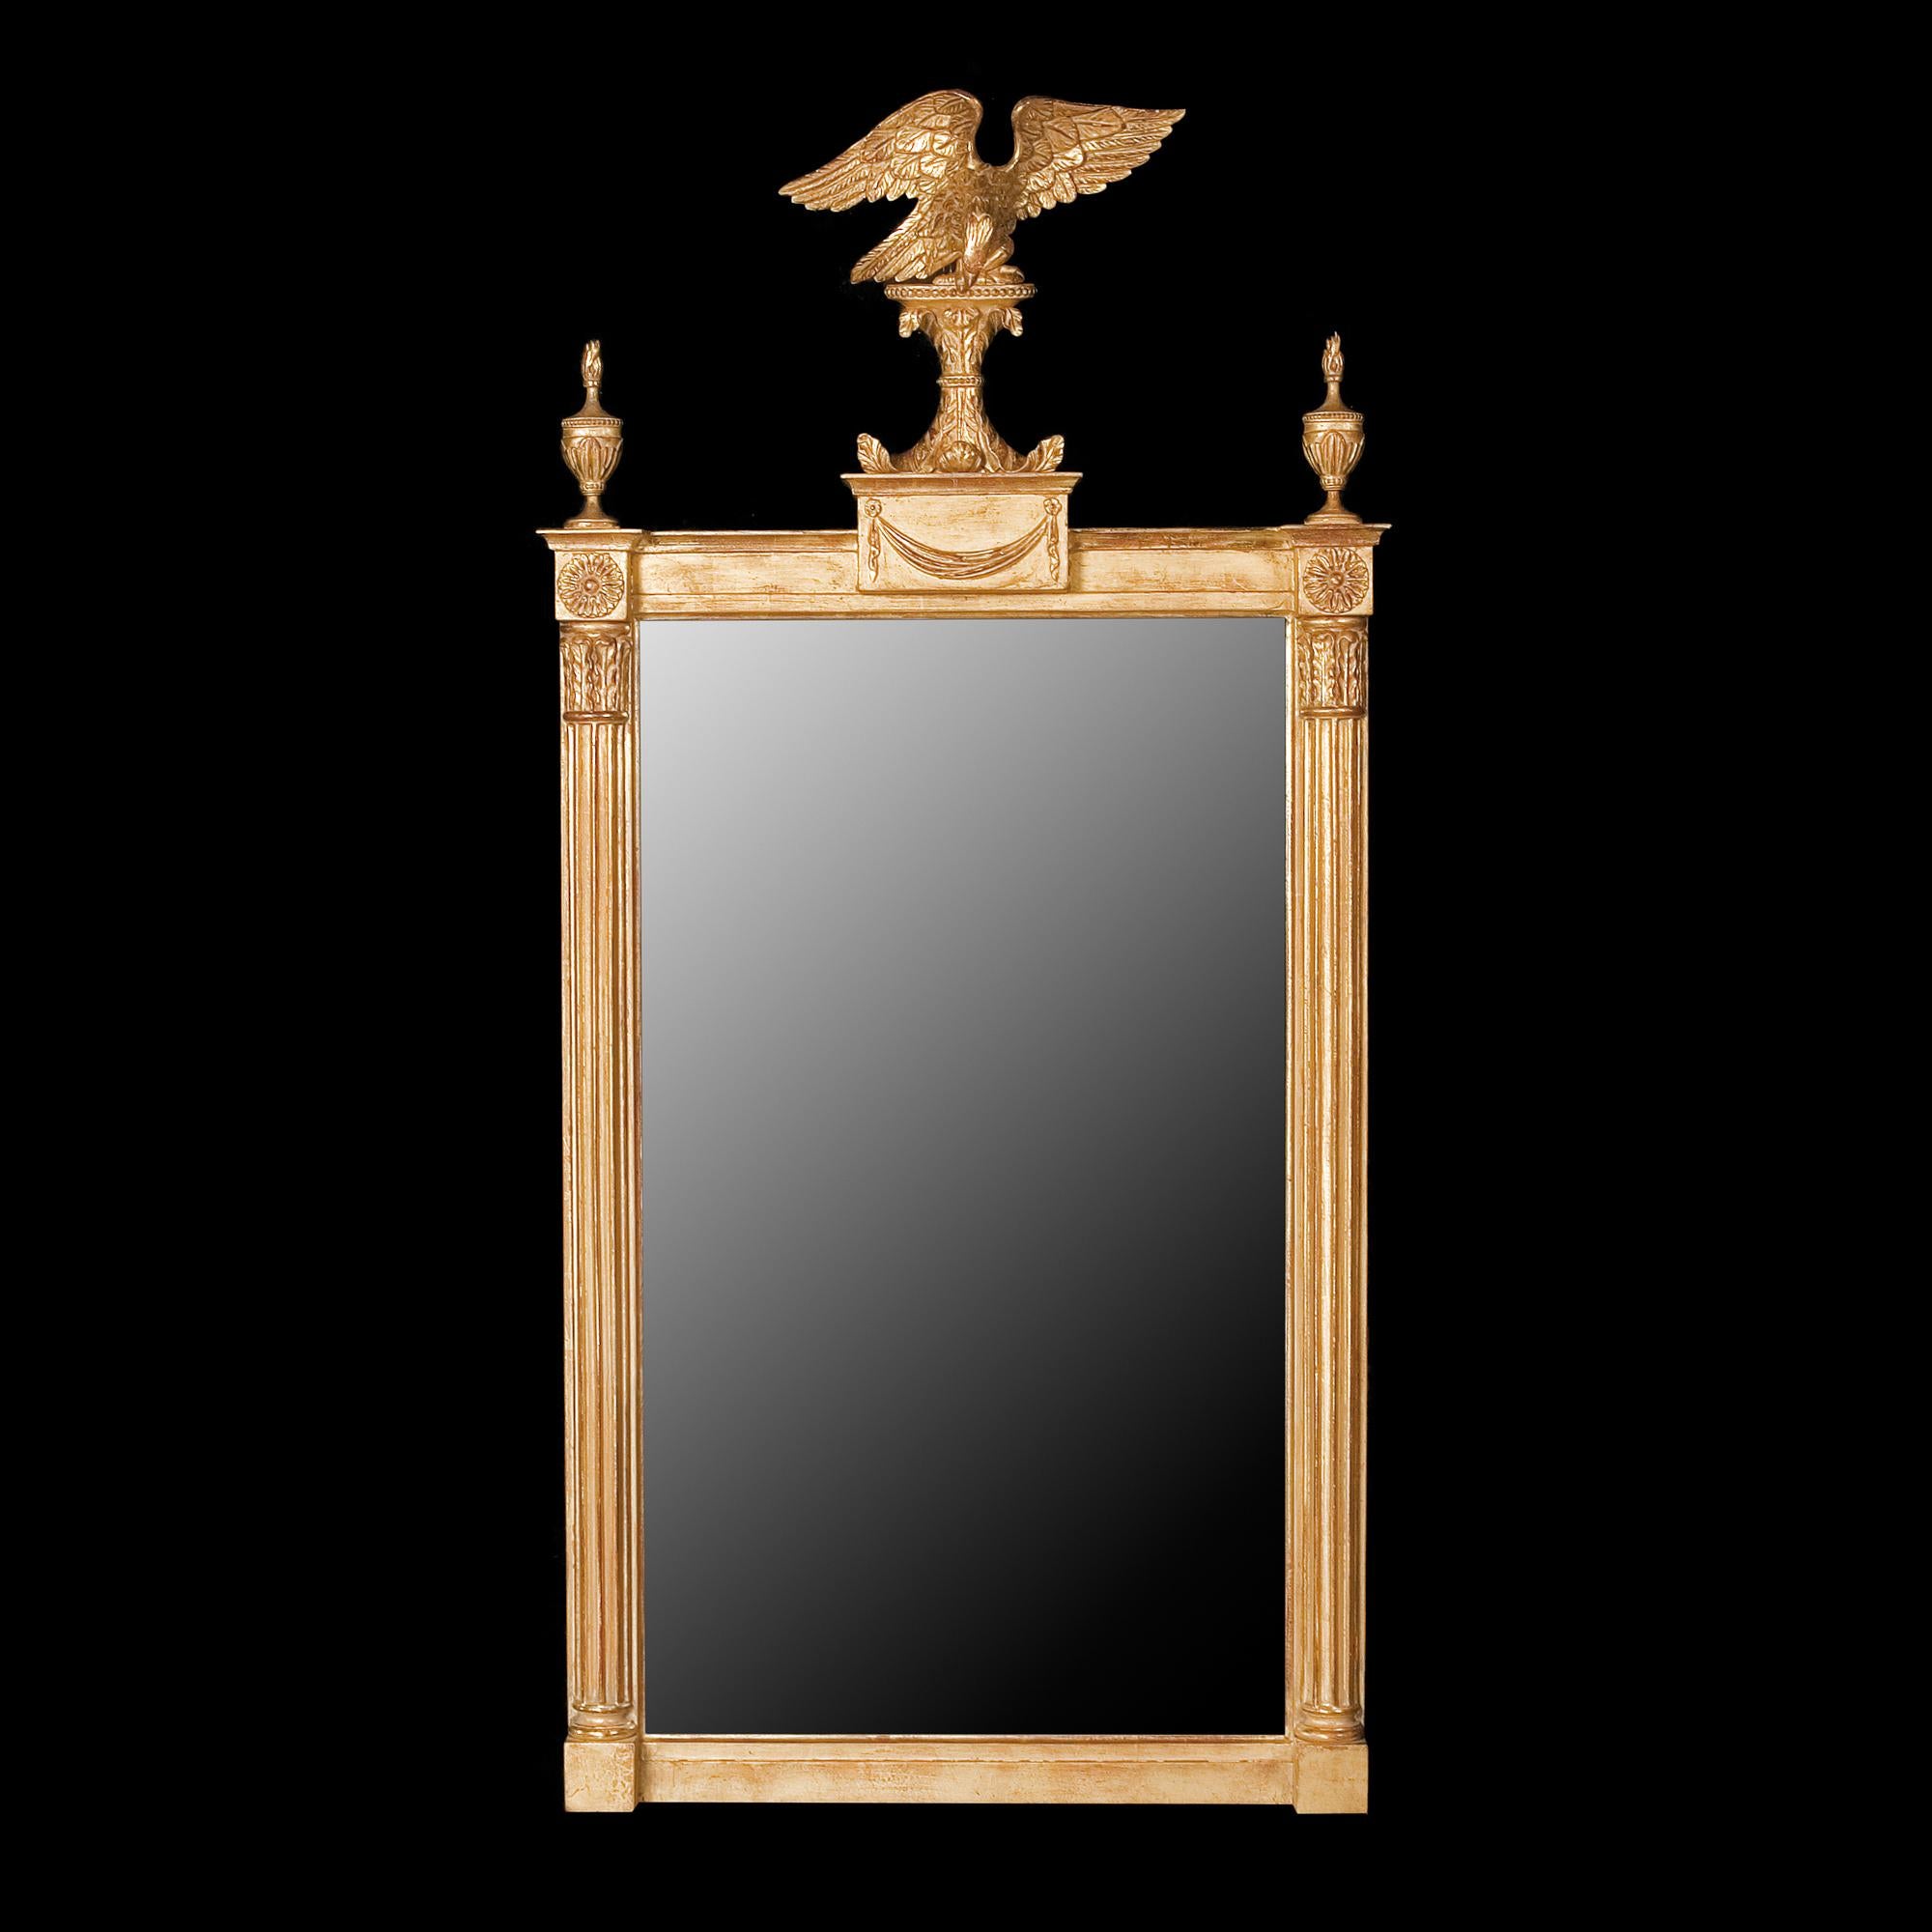 Dieser rechteckige Pfeilerspiegel veranschaulicht die Übergangsstile, die das Glasdesign des späten 18. und frühen 19. Die Spiegelplatte steht zwischen klassizistischen Säulen mit blattgeschnitzten Kapitellen, die von Paterae und blattgeschmückten,